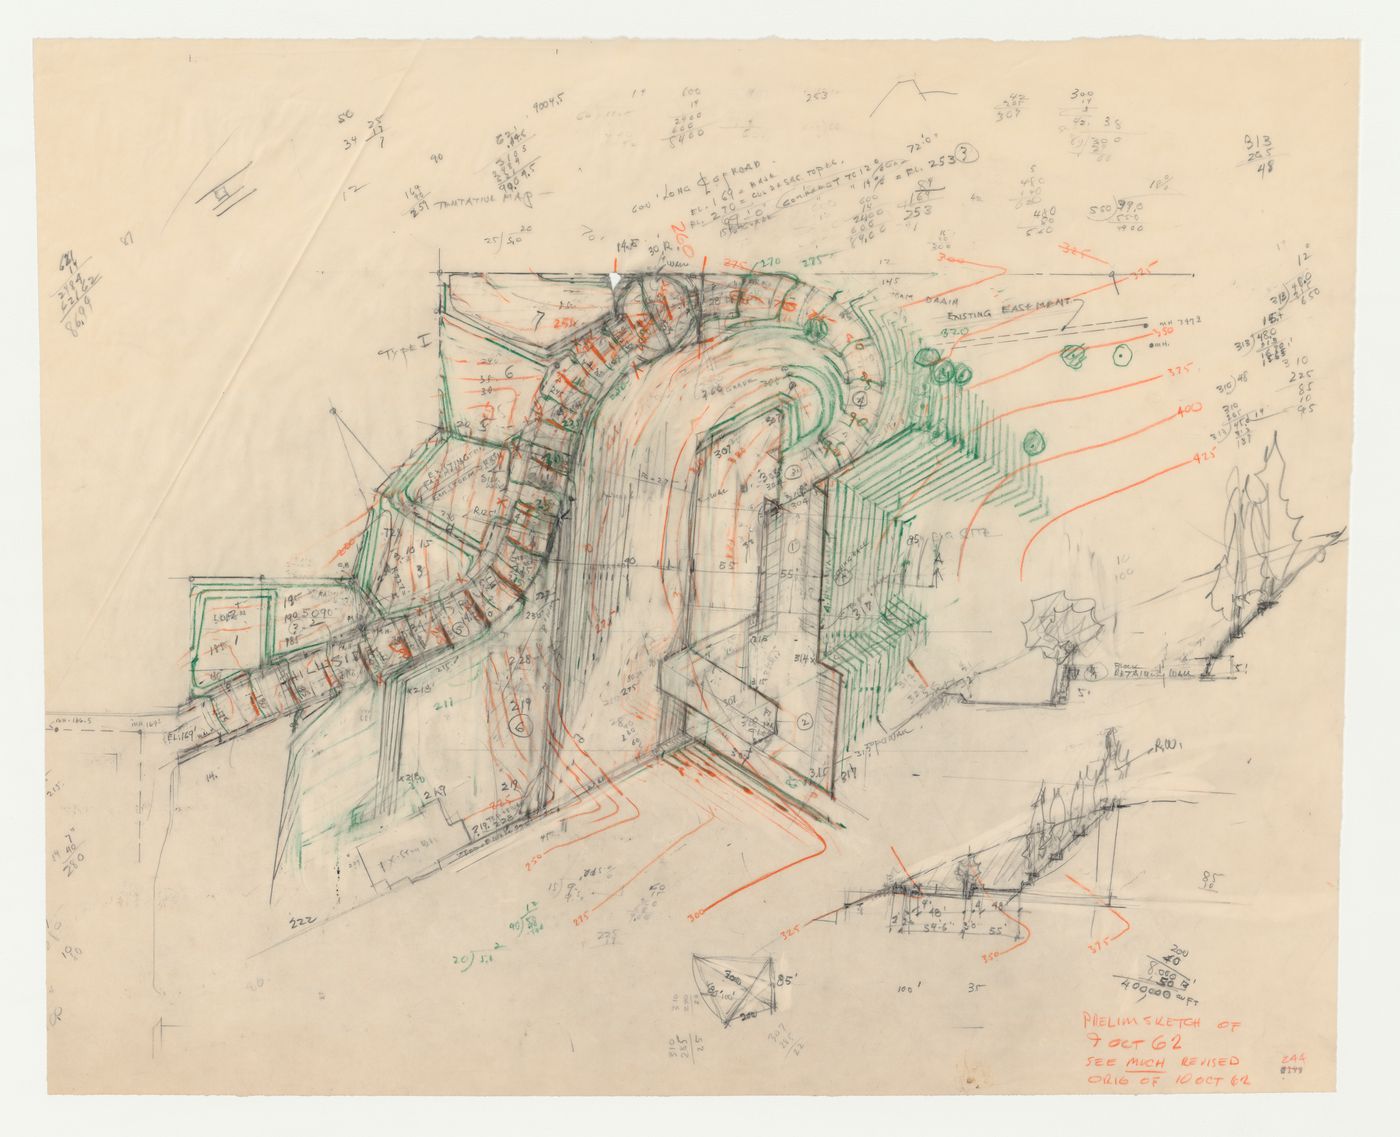 Swedenborg Memorial Chapel, El Cerrito, California: Partial site plan with sketch slope profiles